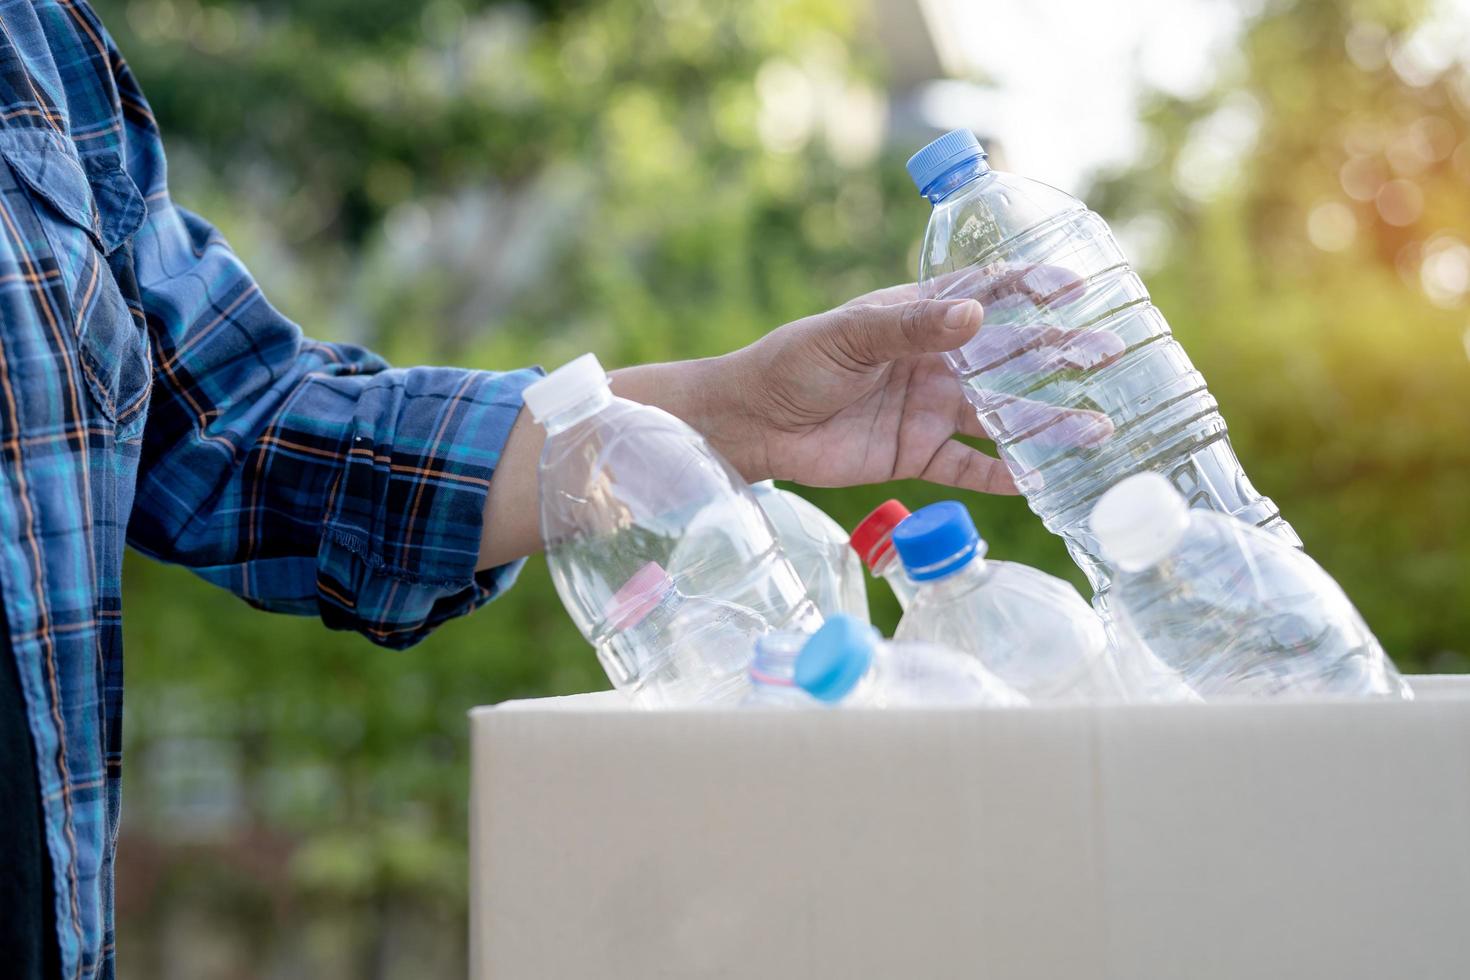 freiwillige asiatische frau trägt wasserplastikflaschen in den müll der mülltonne im park, recycelt das ökologiekonzept der abfallumwelt. foto